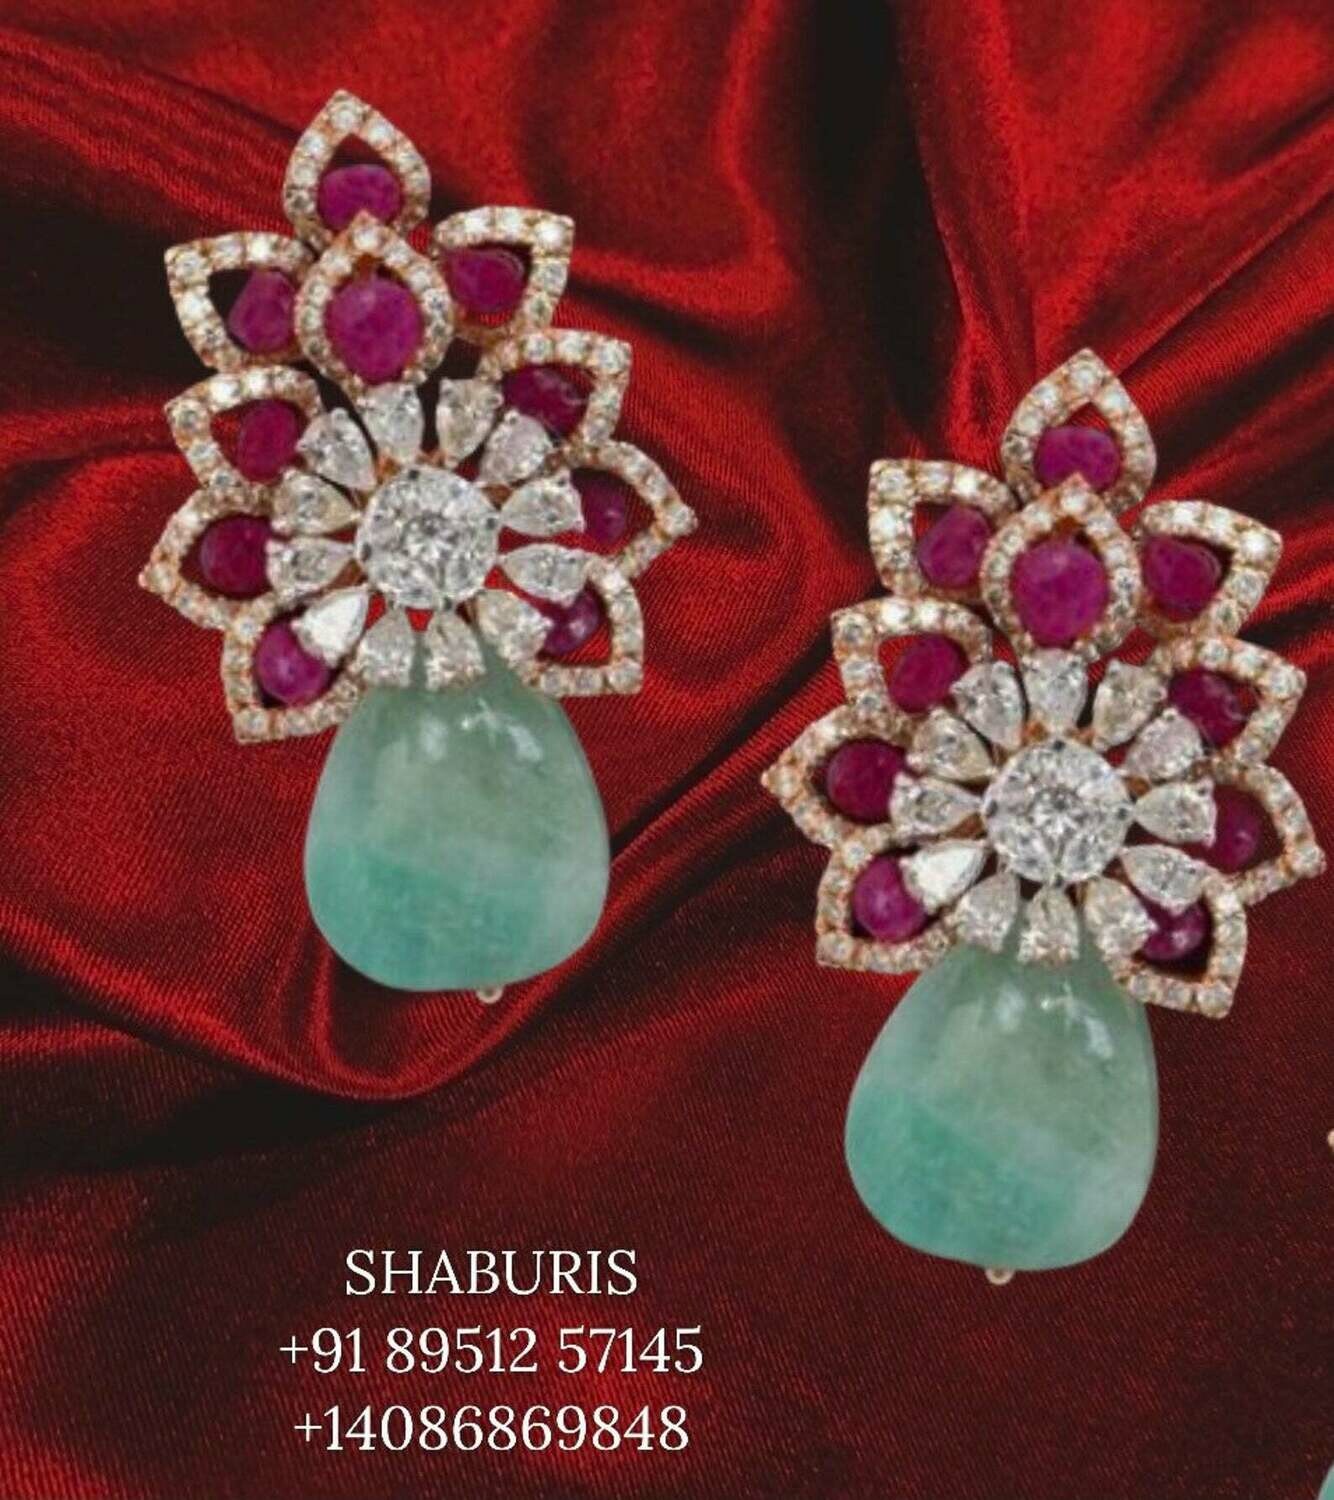 Diamond jhumka pure silver jewelry diamond jewelry,diamond earrings gold jewelry designs indian jewelry diamond studs -SHABURIS